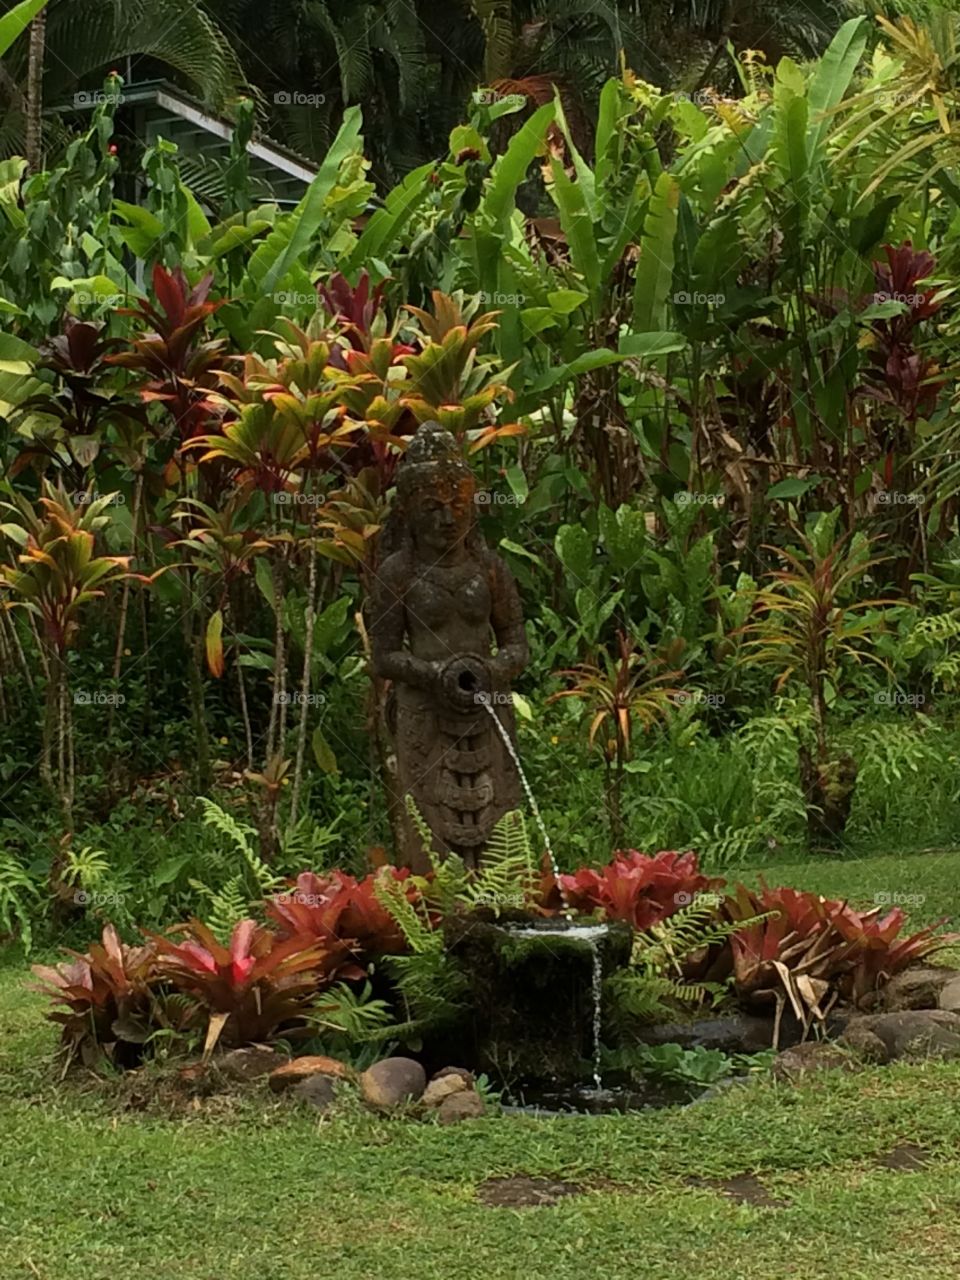 Hawaiian Island statue